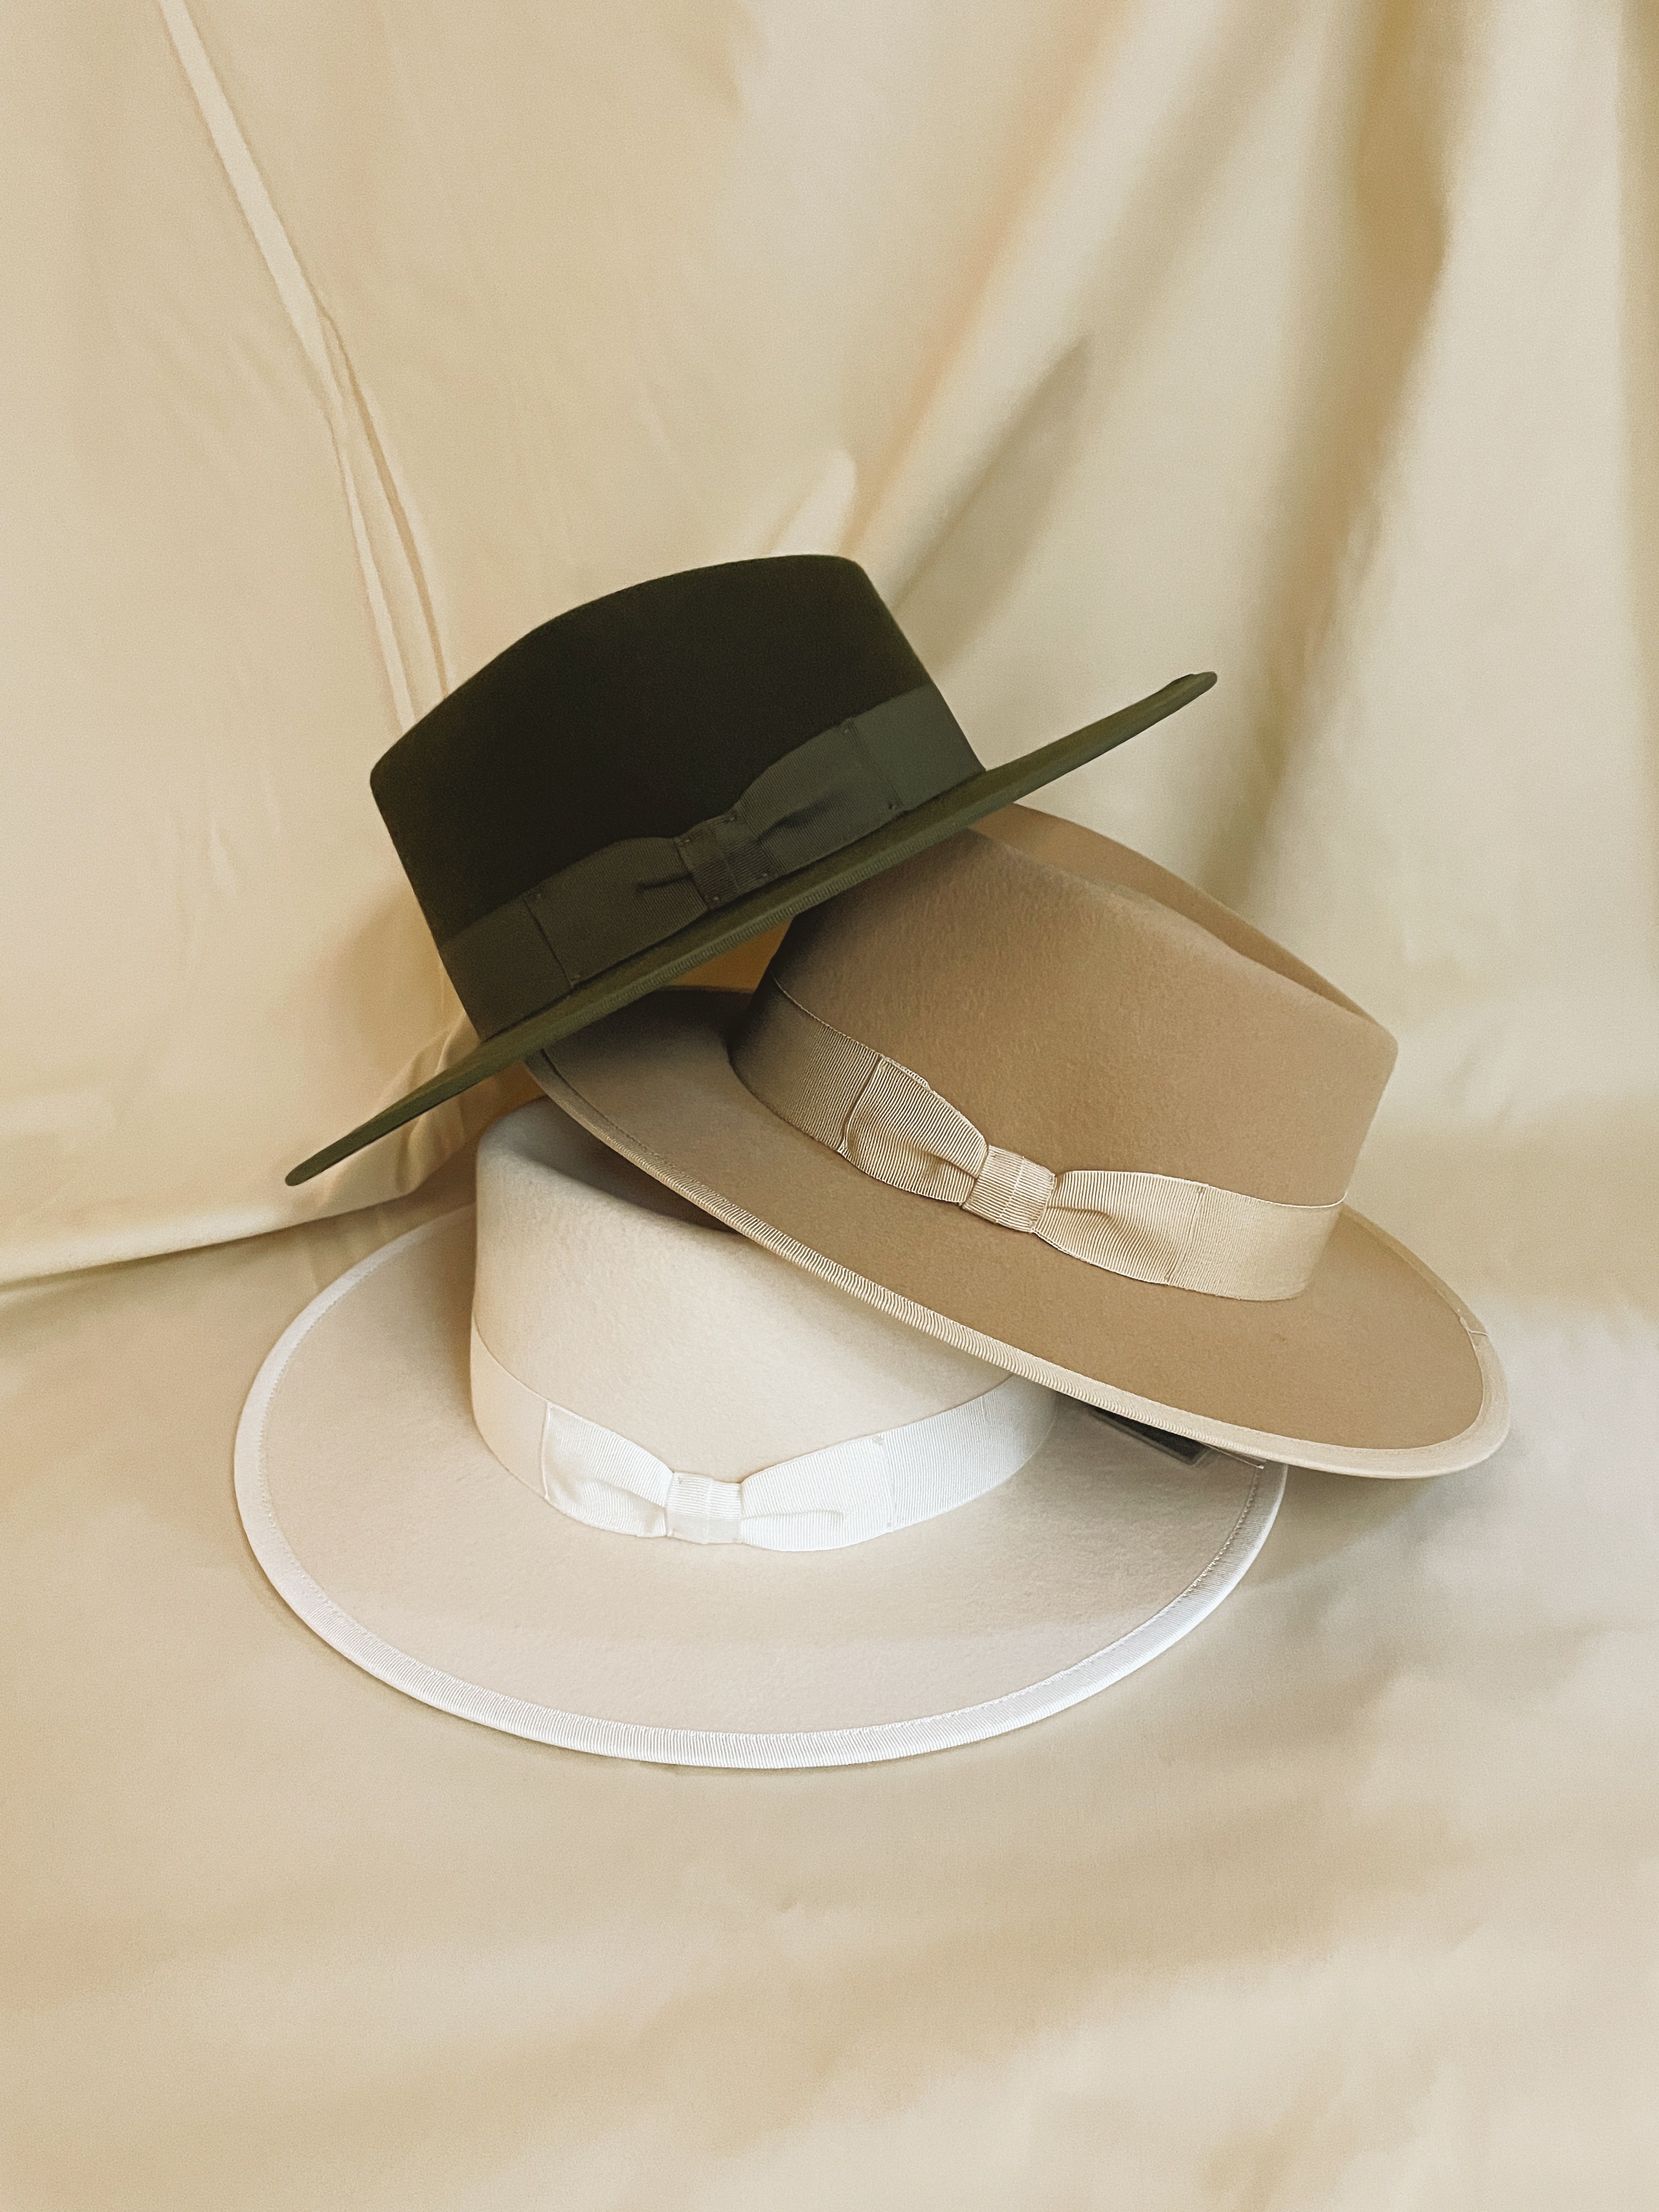 3 chapeaux de la marque marseillaise Van Palma